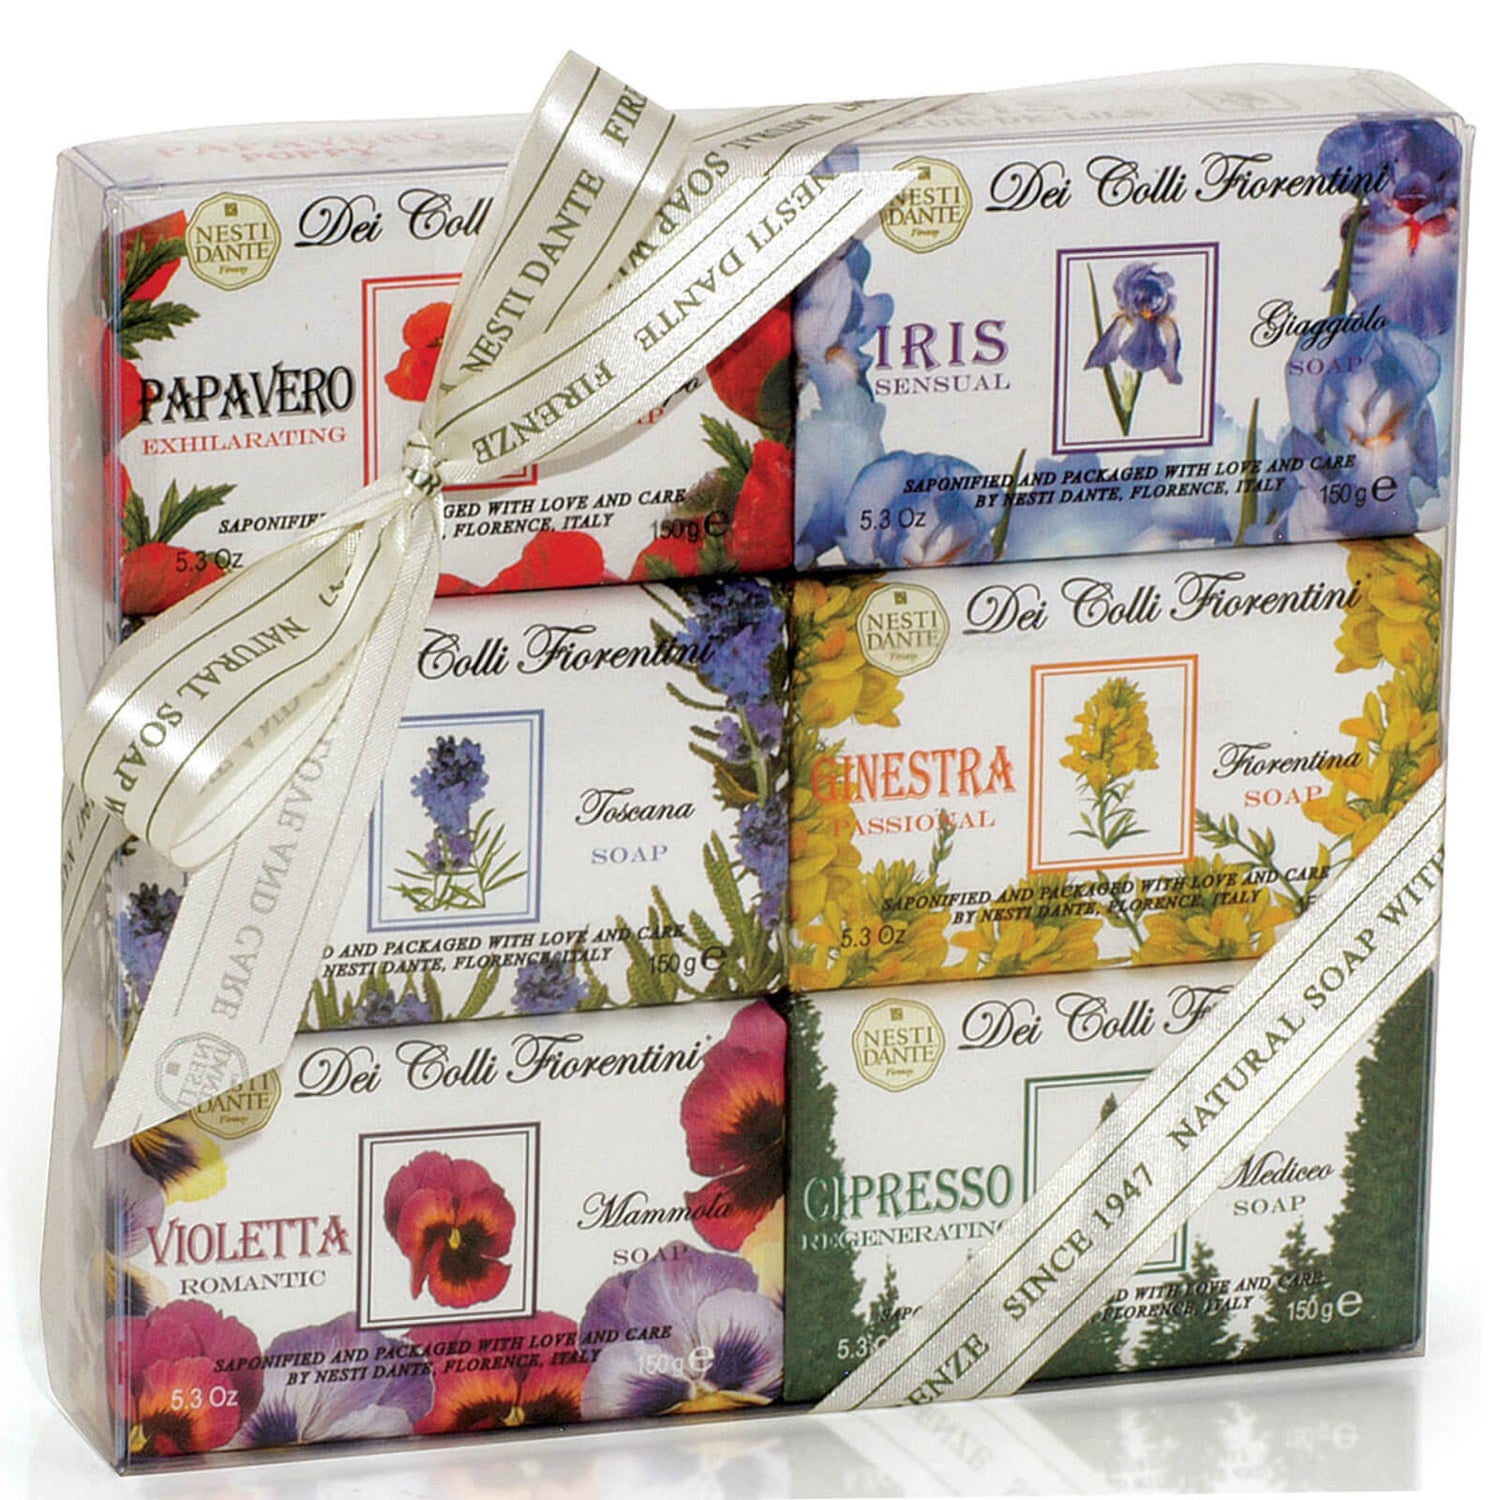 Nesti Dante Dei Colli Fiorentini Soap Collection Set(네스티 단테 데이 콜리 피오렌티니 솝 컬렉션 세트 6 x 150g)